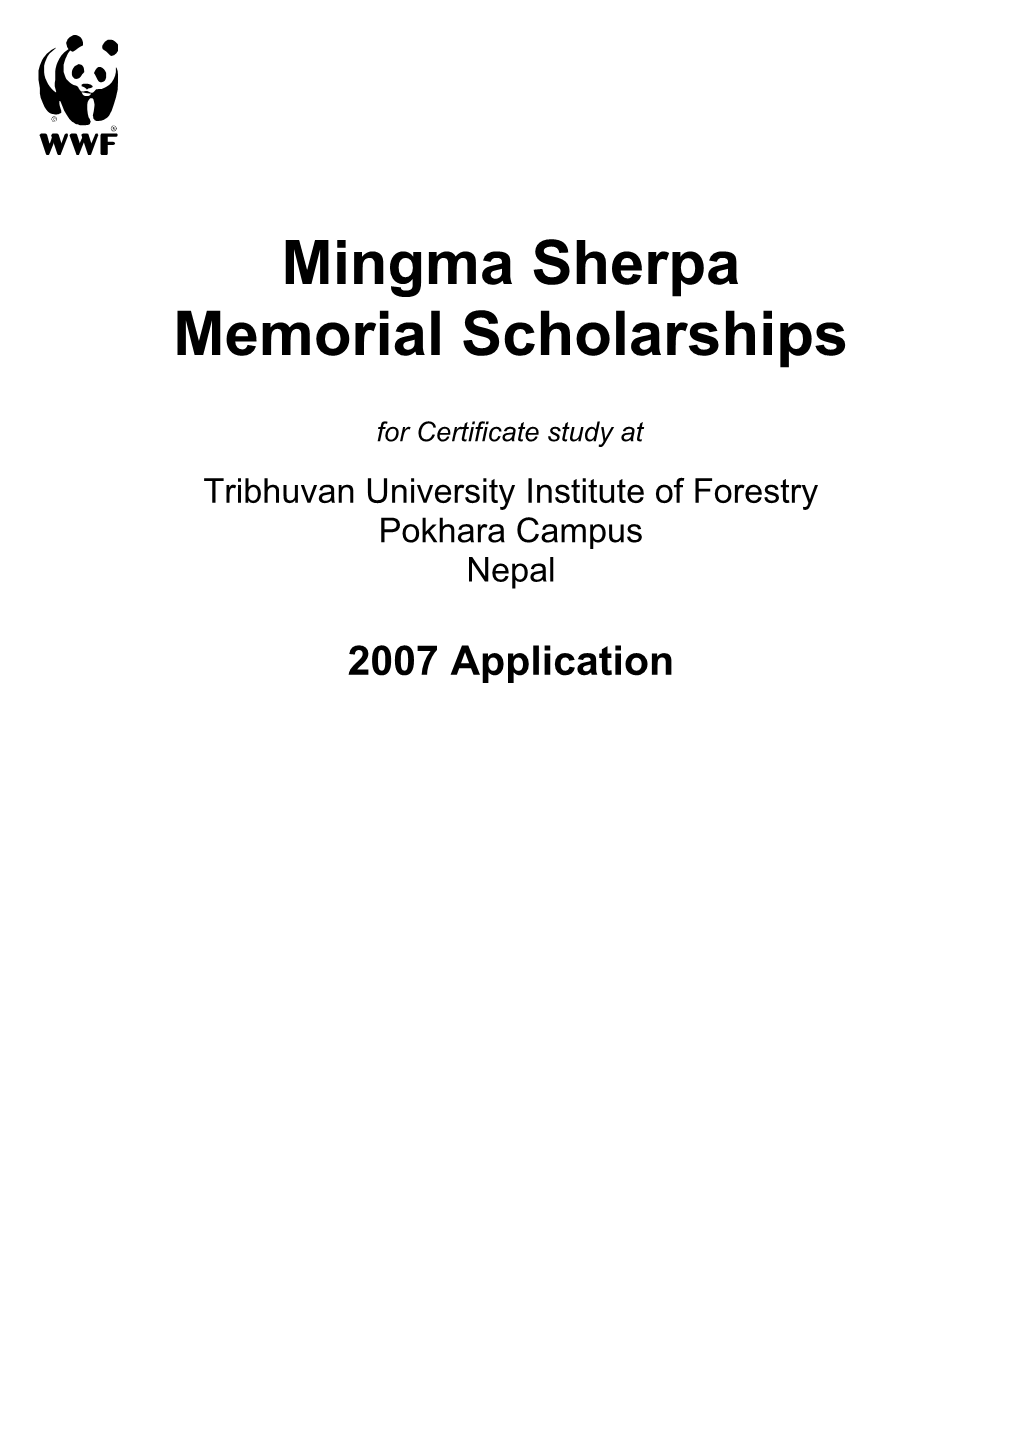 Memorial Scholarships